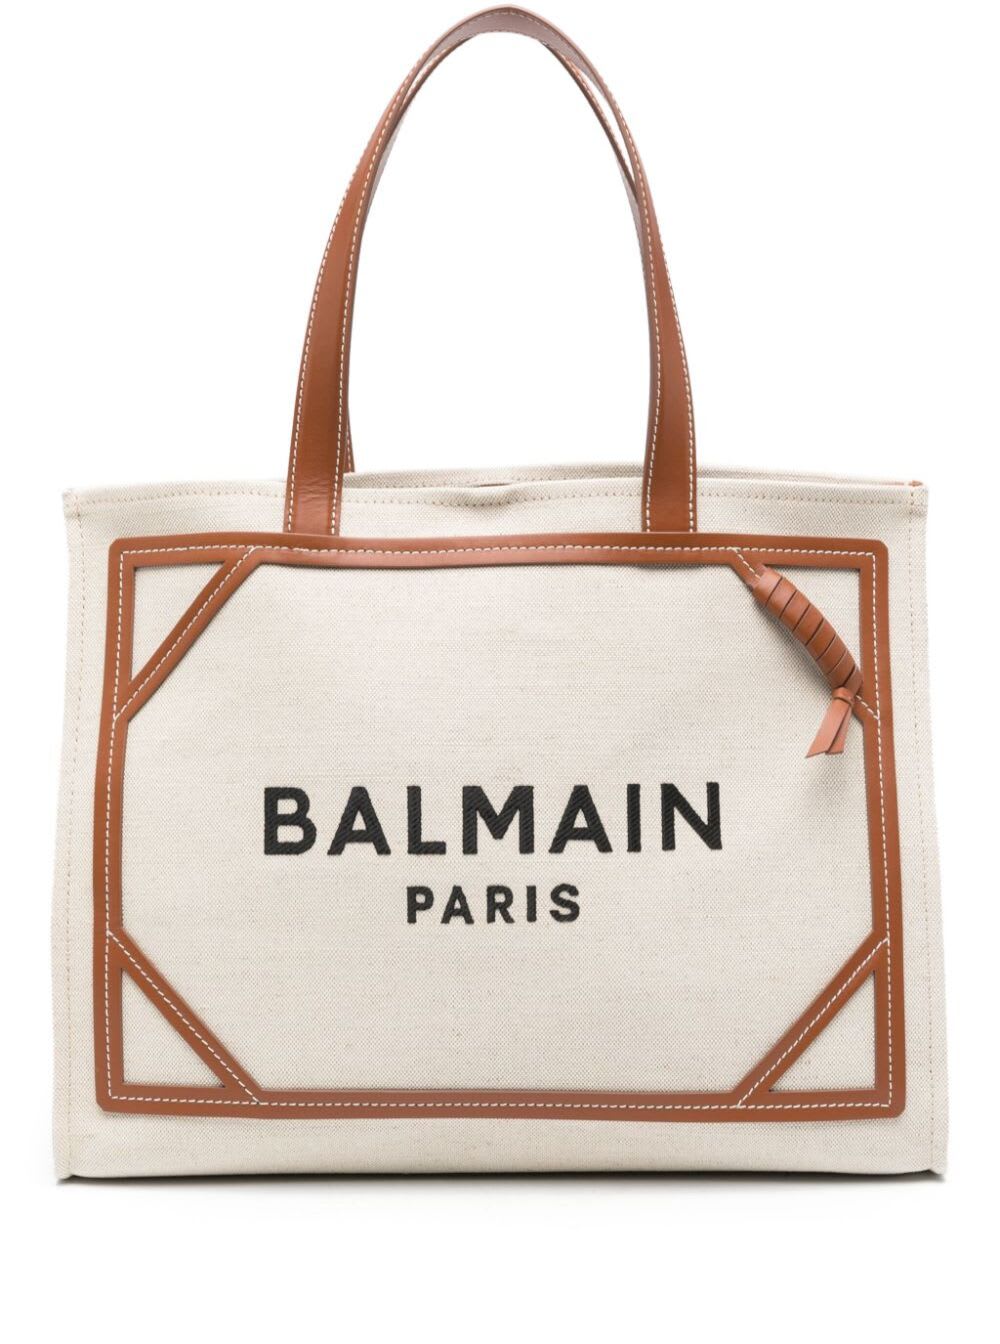 Balmain B-army Beige Shopper Bag With Logo In Canvas Woman